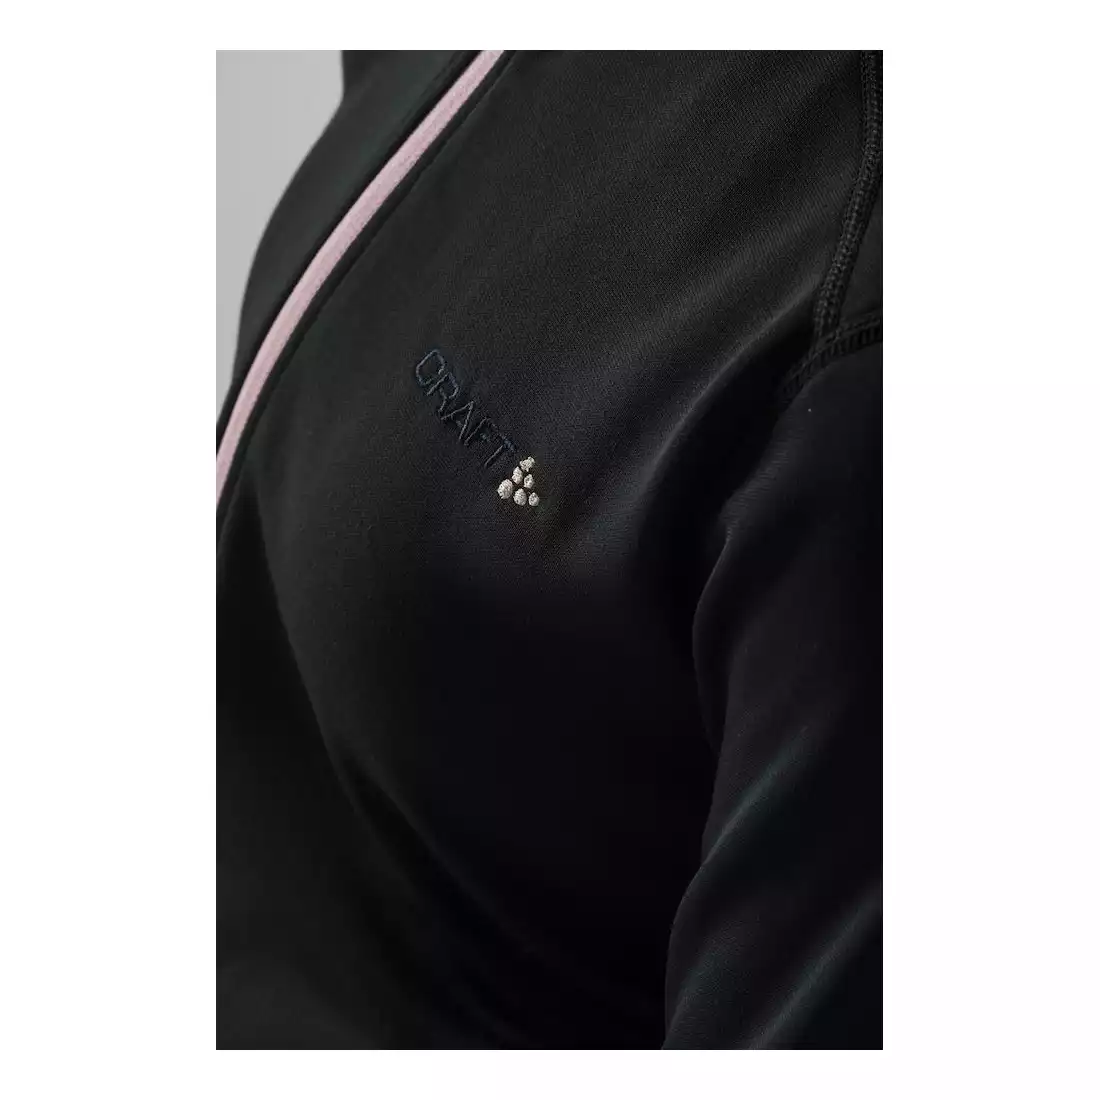 CRAFT SWEEP damska bluza sportowa 1905300-999701